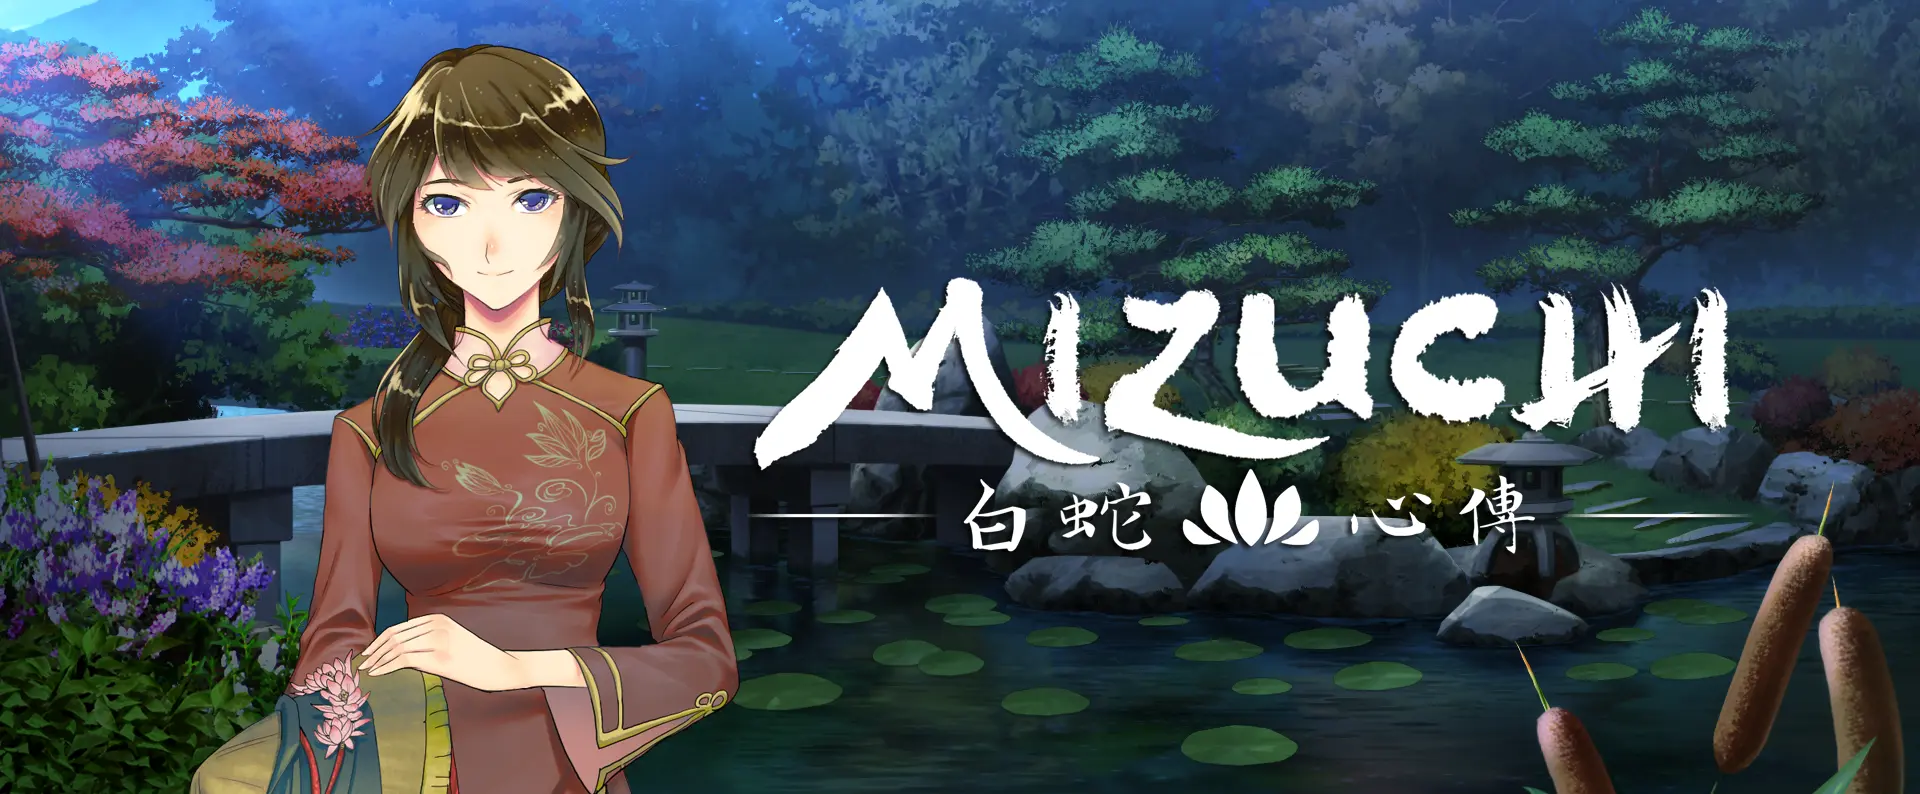 Mizuchi [v1.0] main image